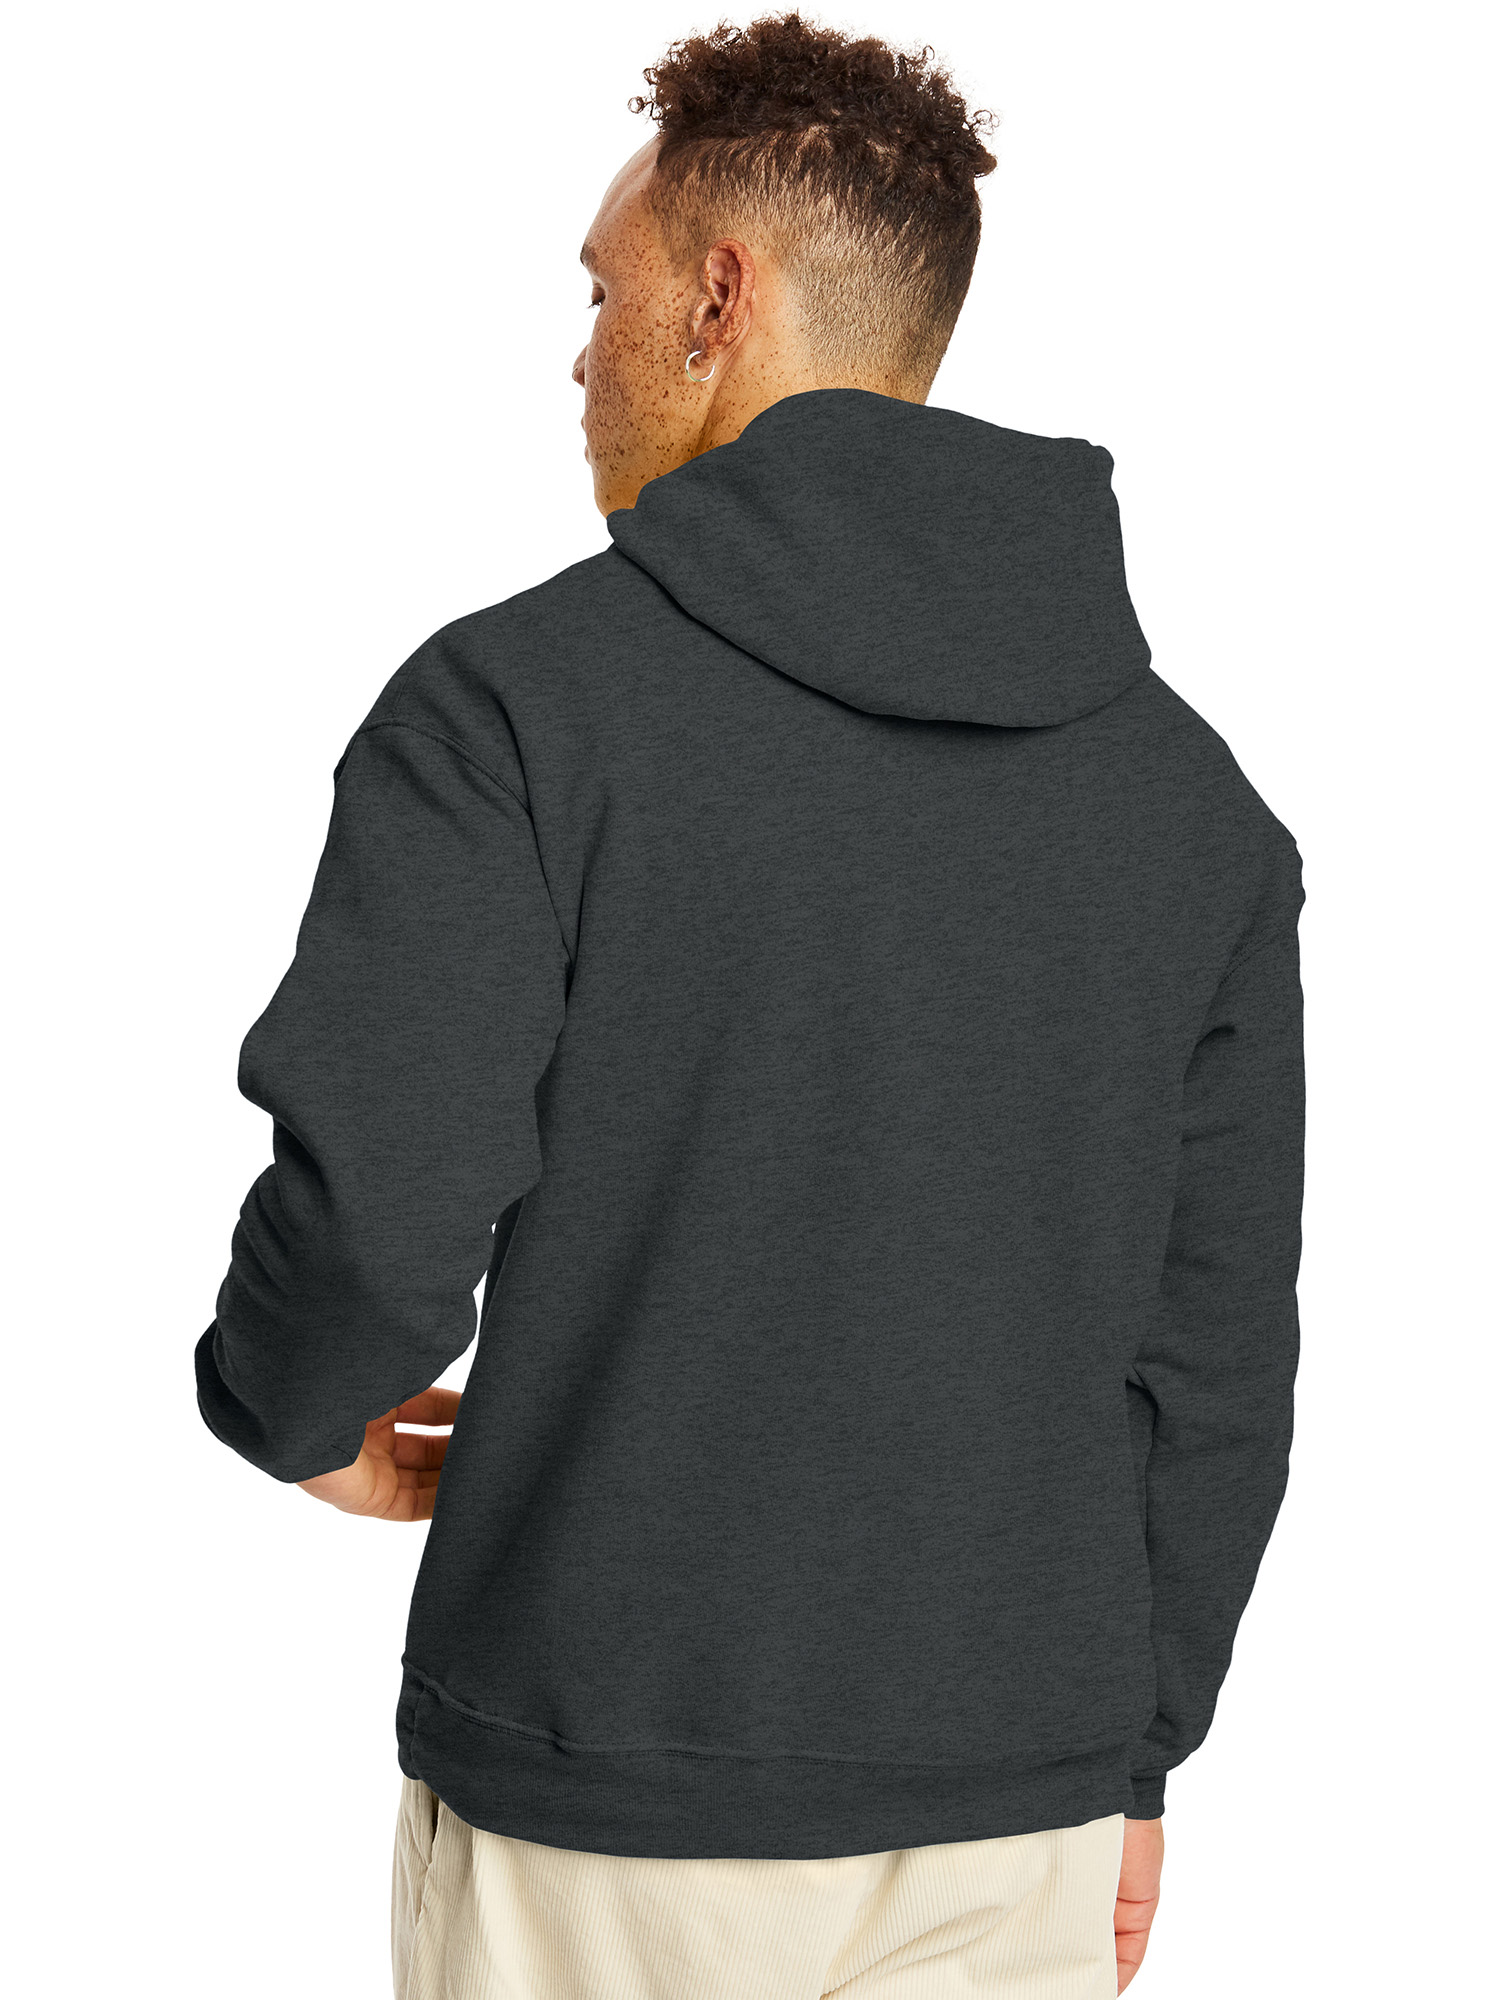 Hanes Men's and Big Men's Ecosmart Fleece Pullover Hoodie Sweatshirt, up to Size 5XL - image 2 of 6